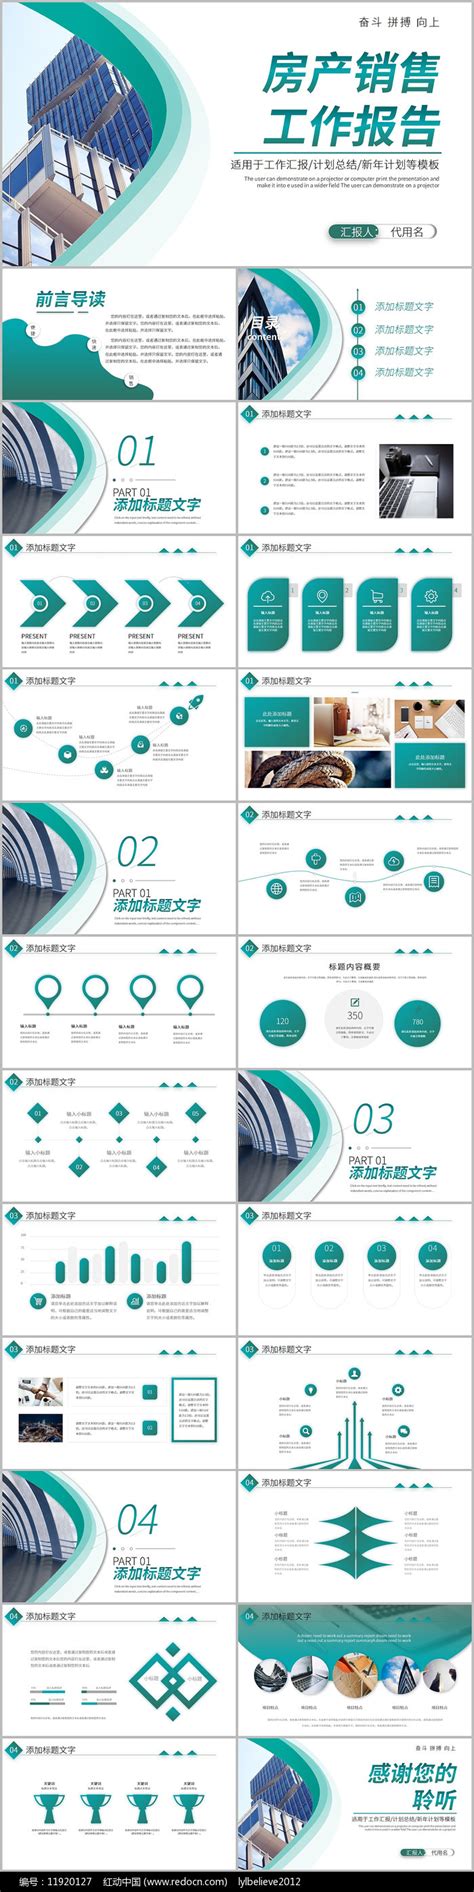 房地产代理企业画册宣传册AI广告设计素材海报模板免费下载-享设计